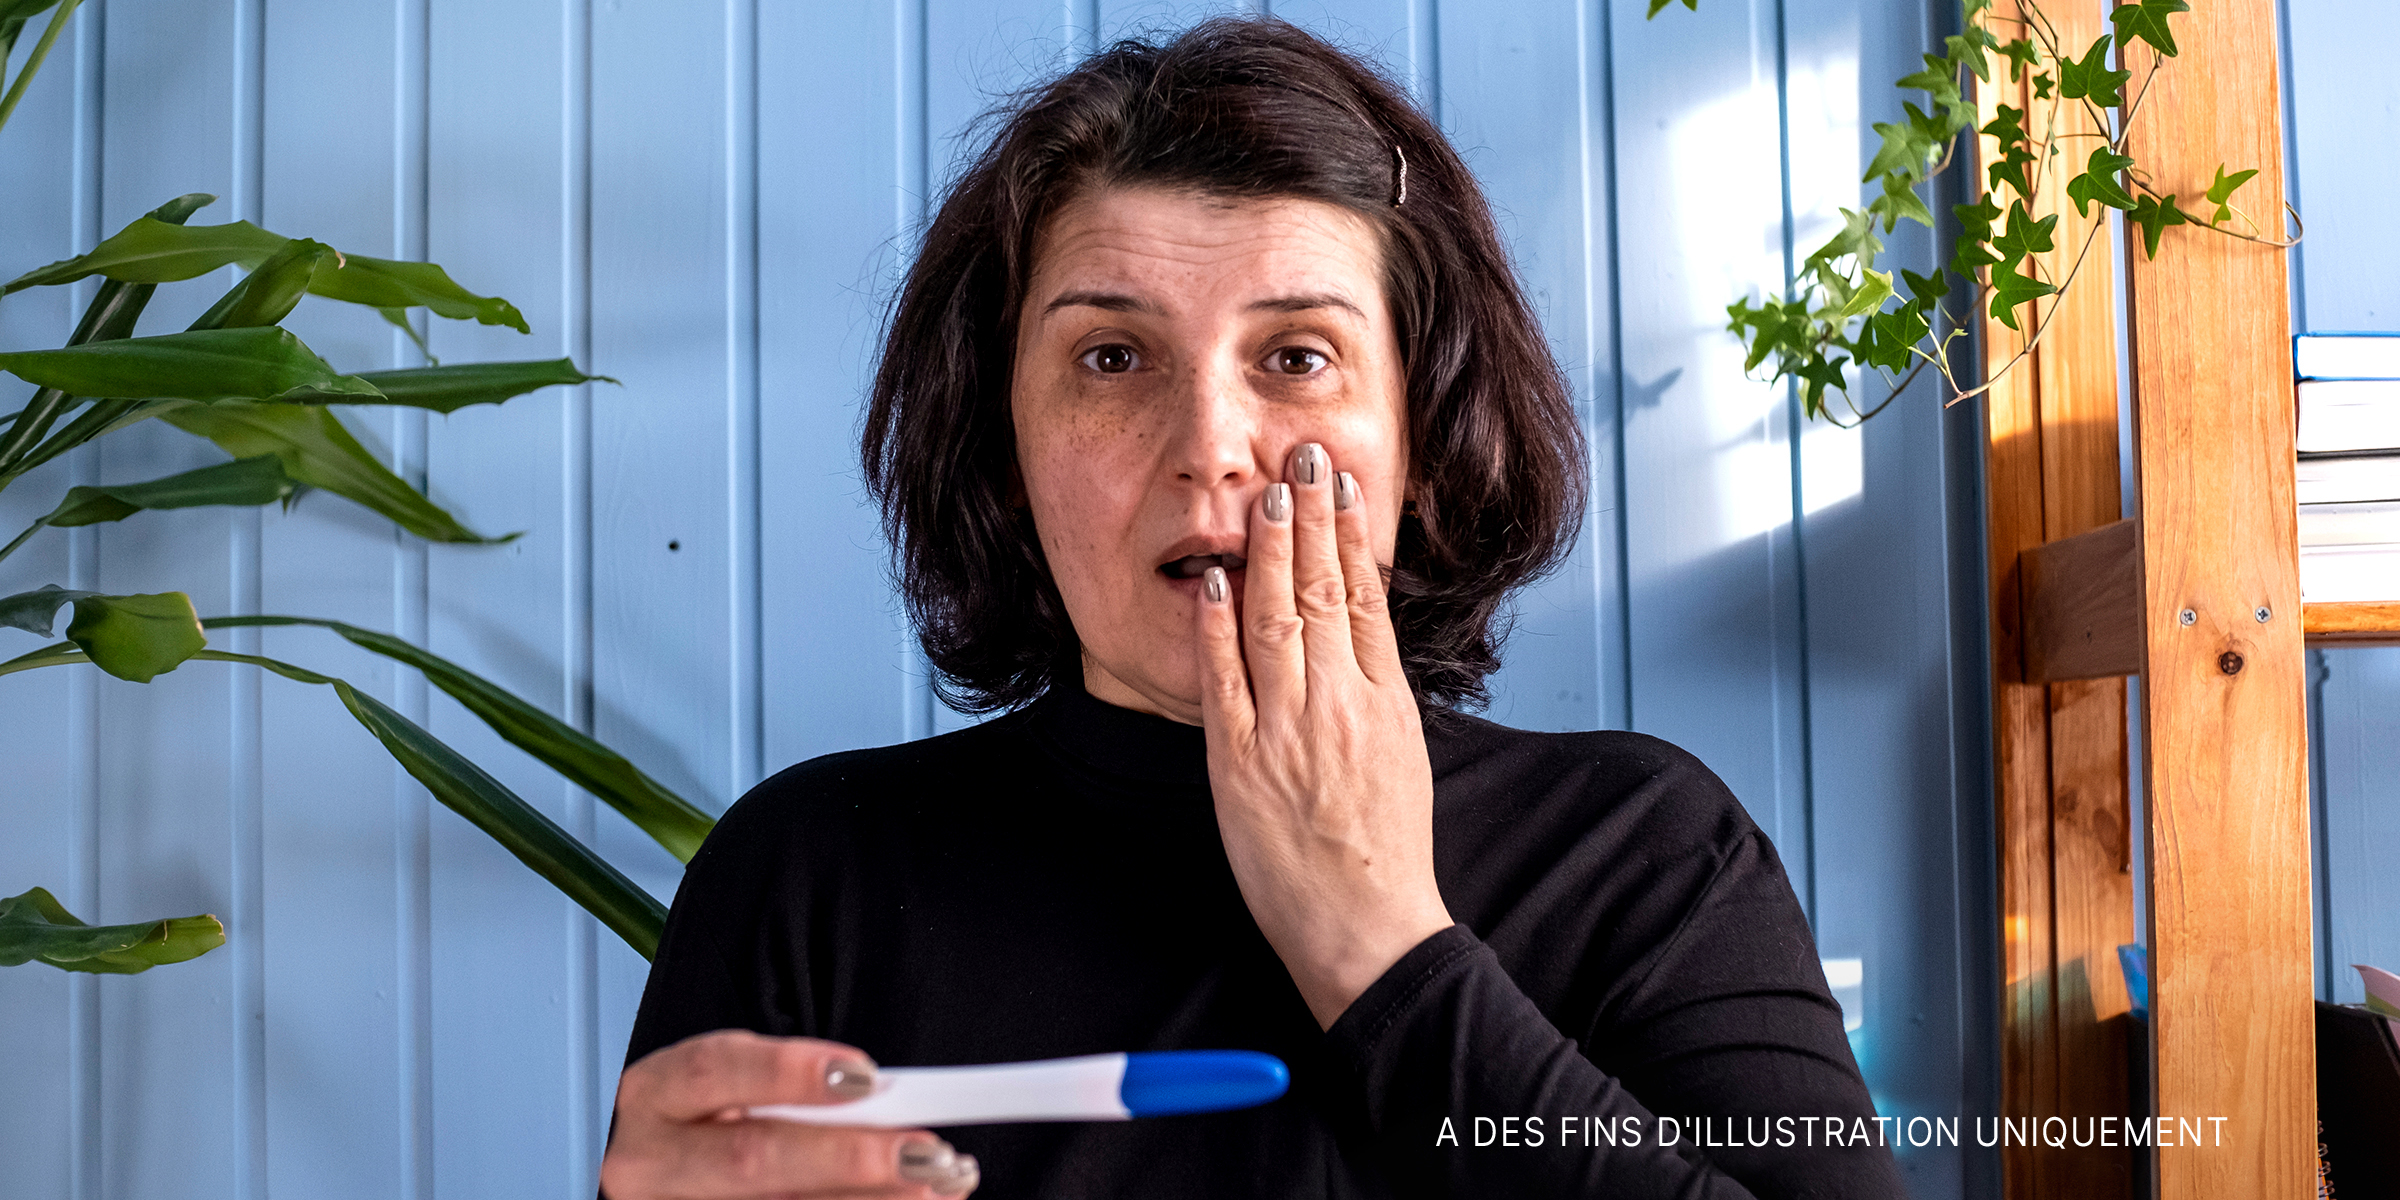 Une femme d'âge moyen regarde le résultat d'un test de grossesse qui s'avère positif | Source : Shutterstock